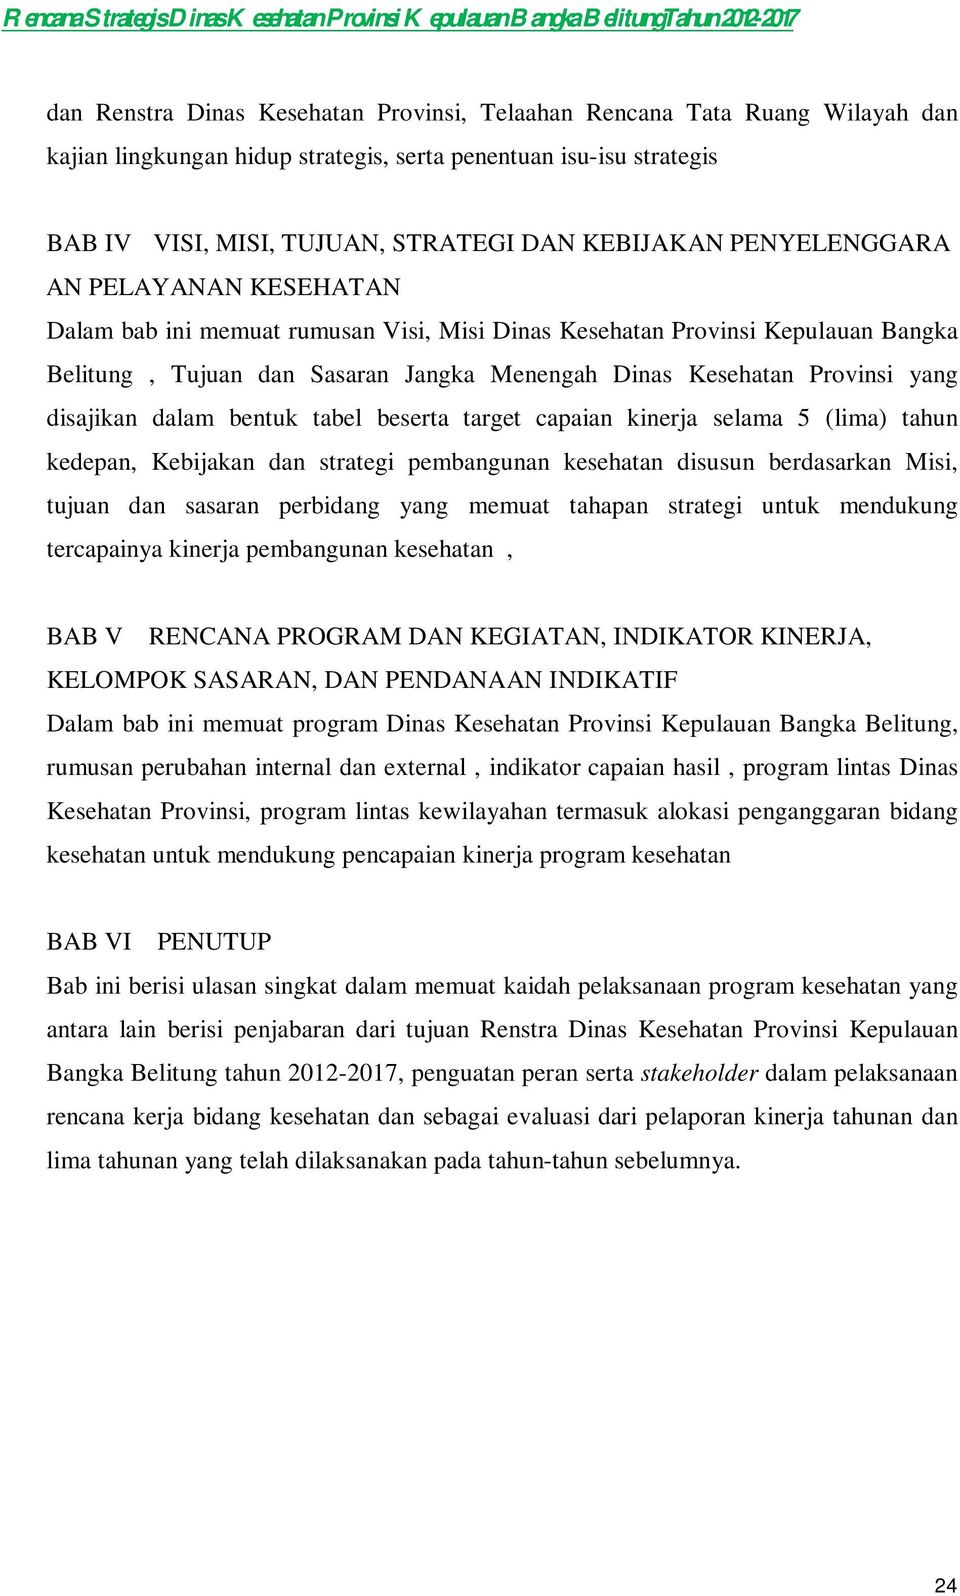 Bangka Belitung, Tujuan dan Sasaran Jangka Menengah Dinas Kesehatan Provinsi yang disajikan dalam bentuk tabel beserta target capaian kinerja selama 5 (lima) tahun kedepan, Kebijakan dan strategi